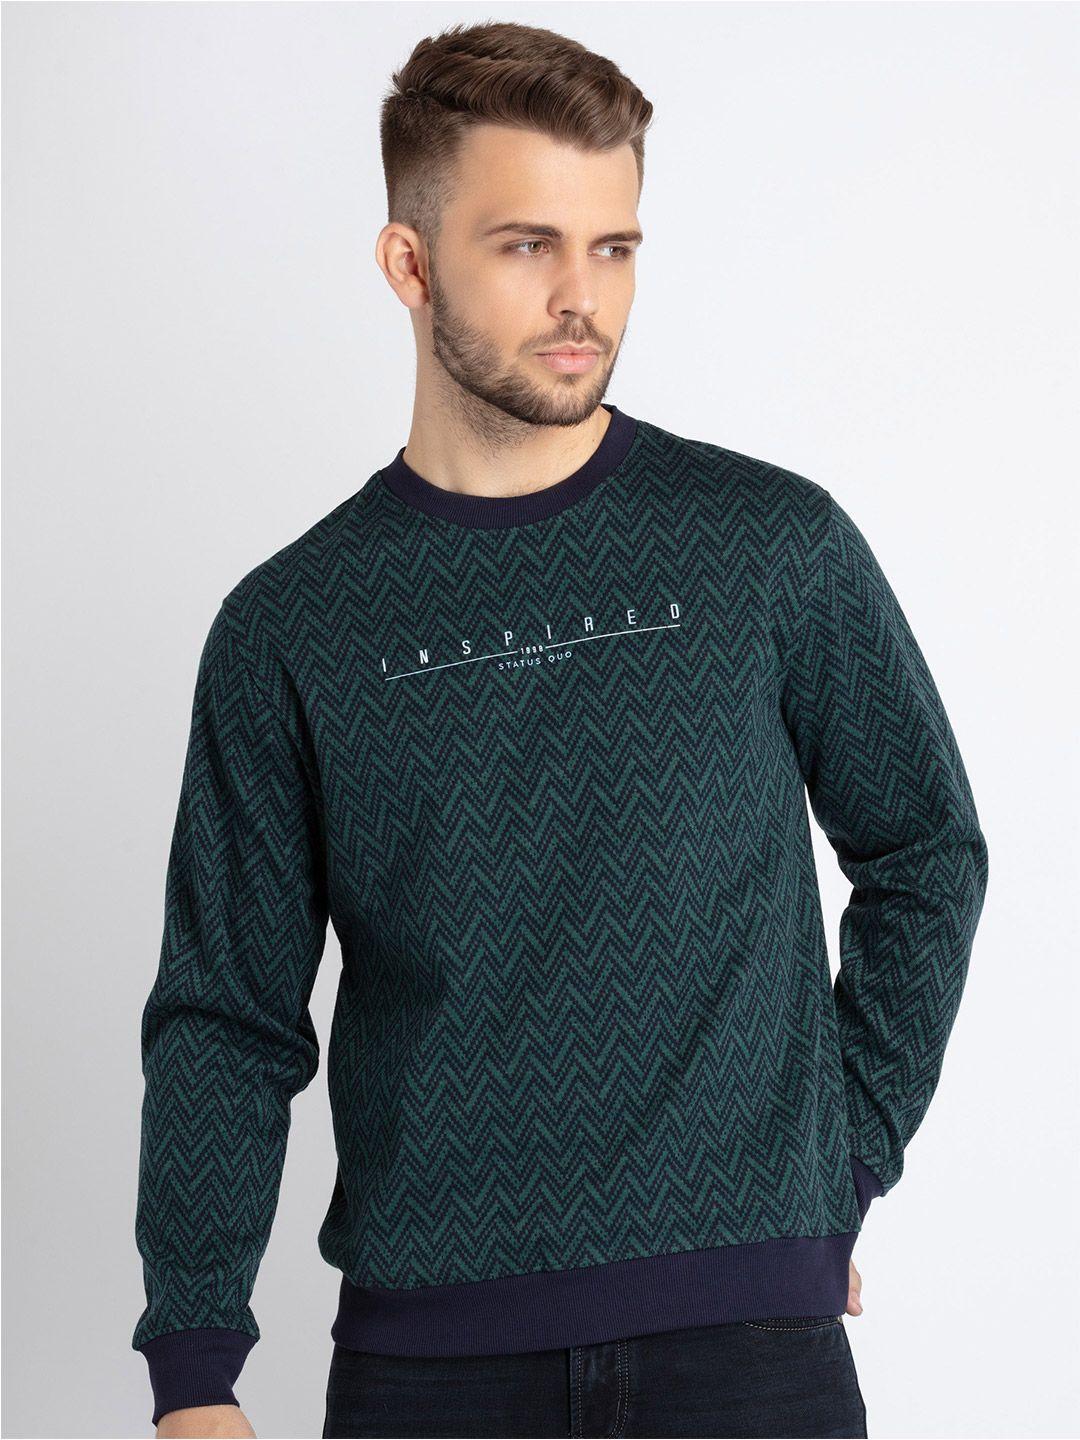 status quo self design cotton sweatshirt